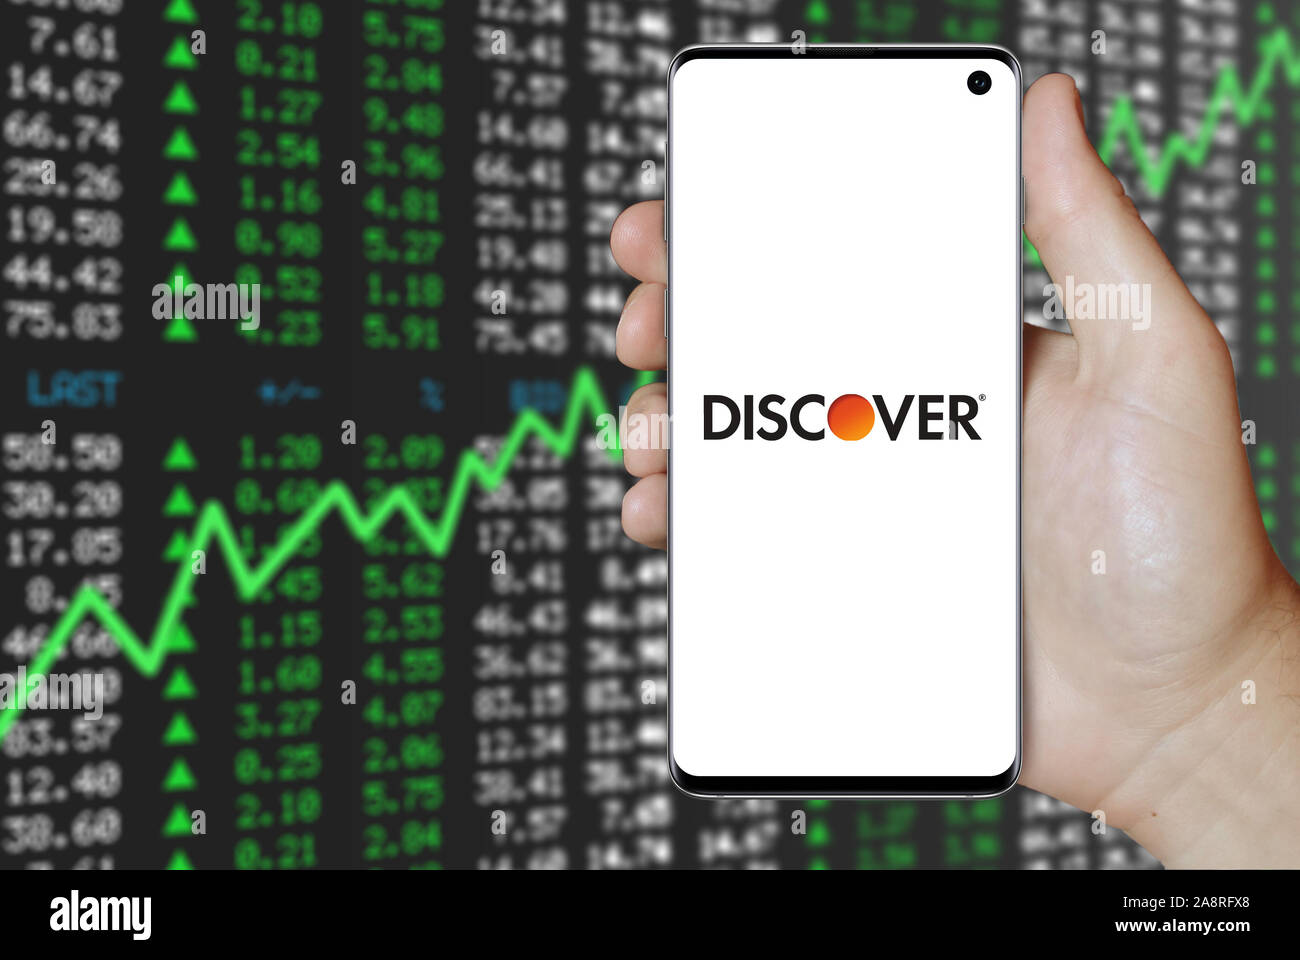 Logo der öffentlichen Unternehmen Discover Financial Services angezeigt auf einem Smartphone. Positive Börse Hintergrund. Credit: PIXDUCE Stockfoto